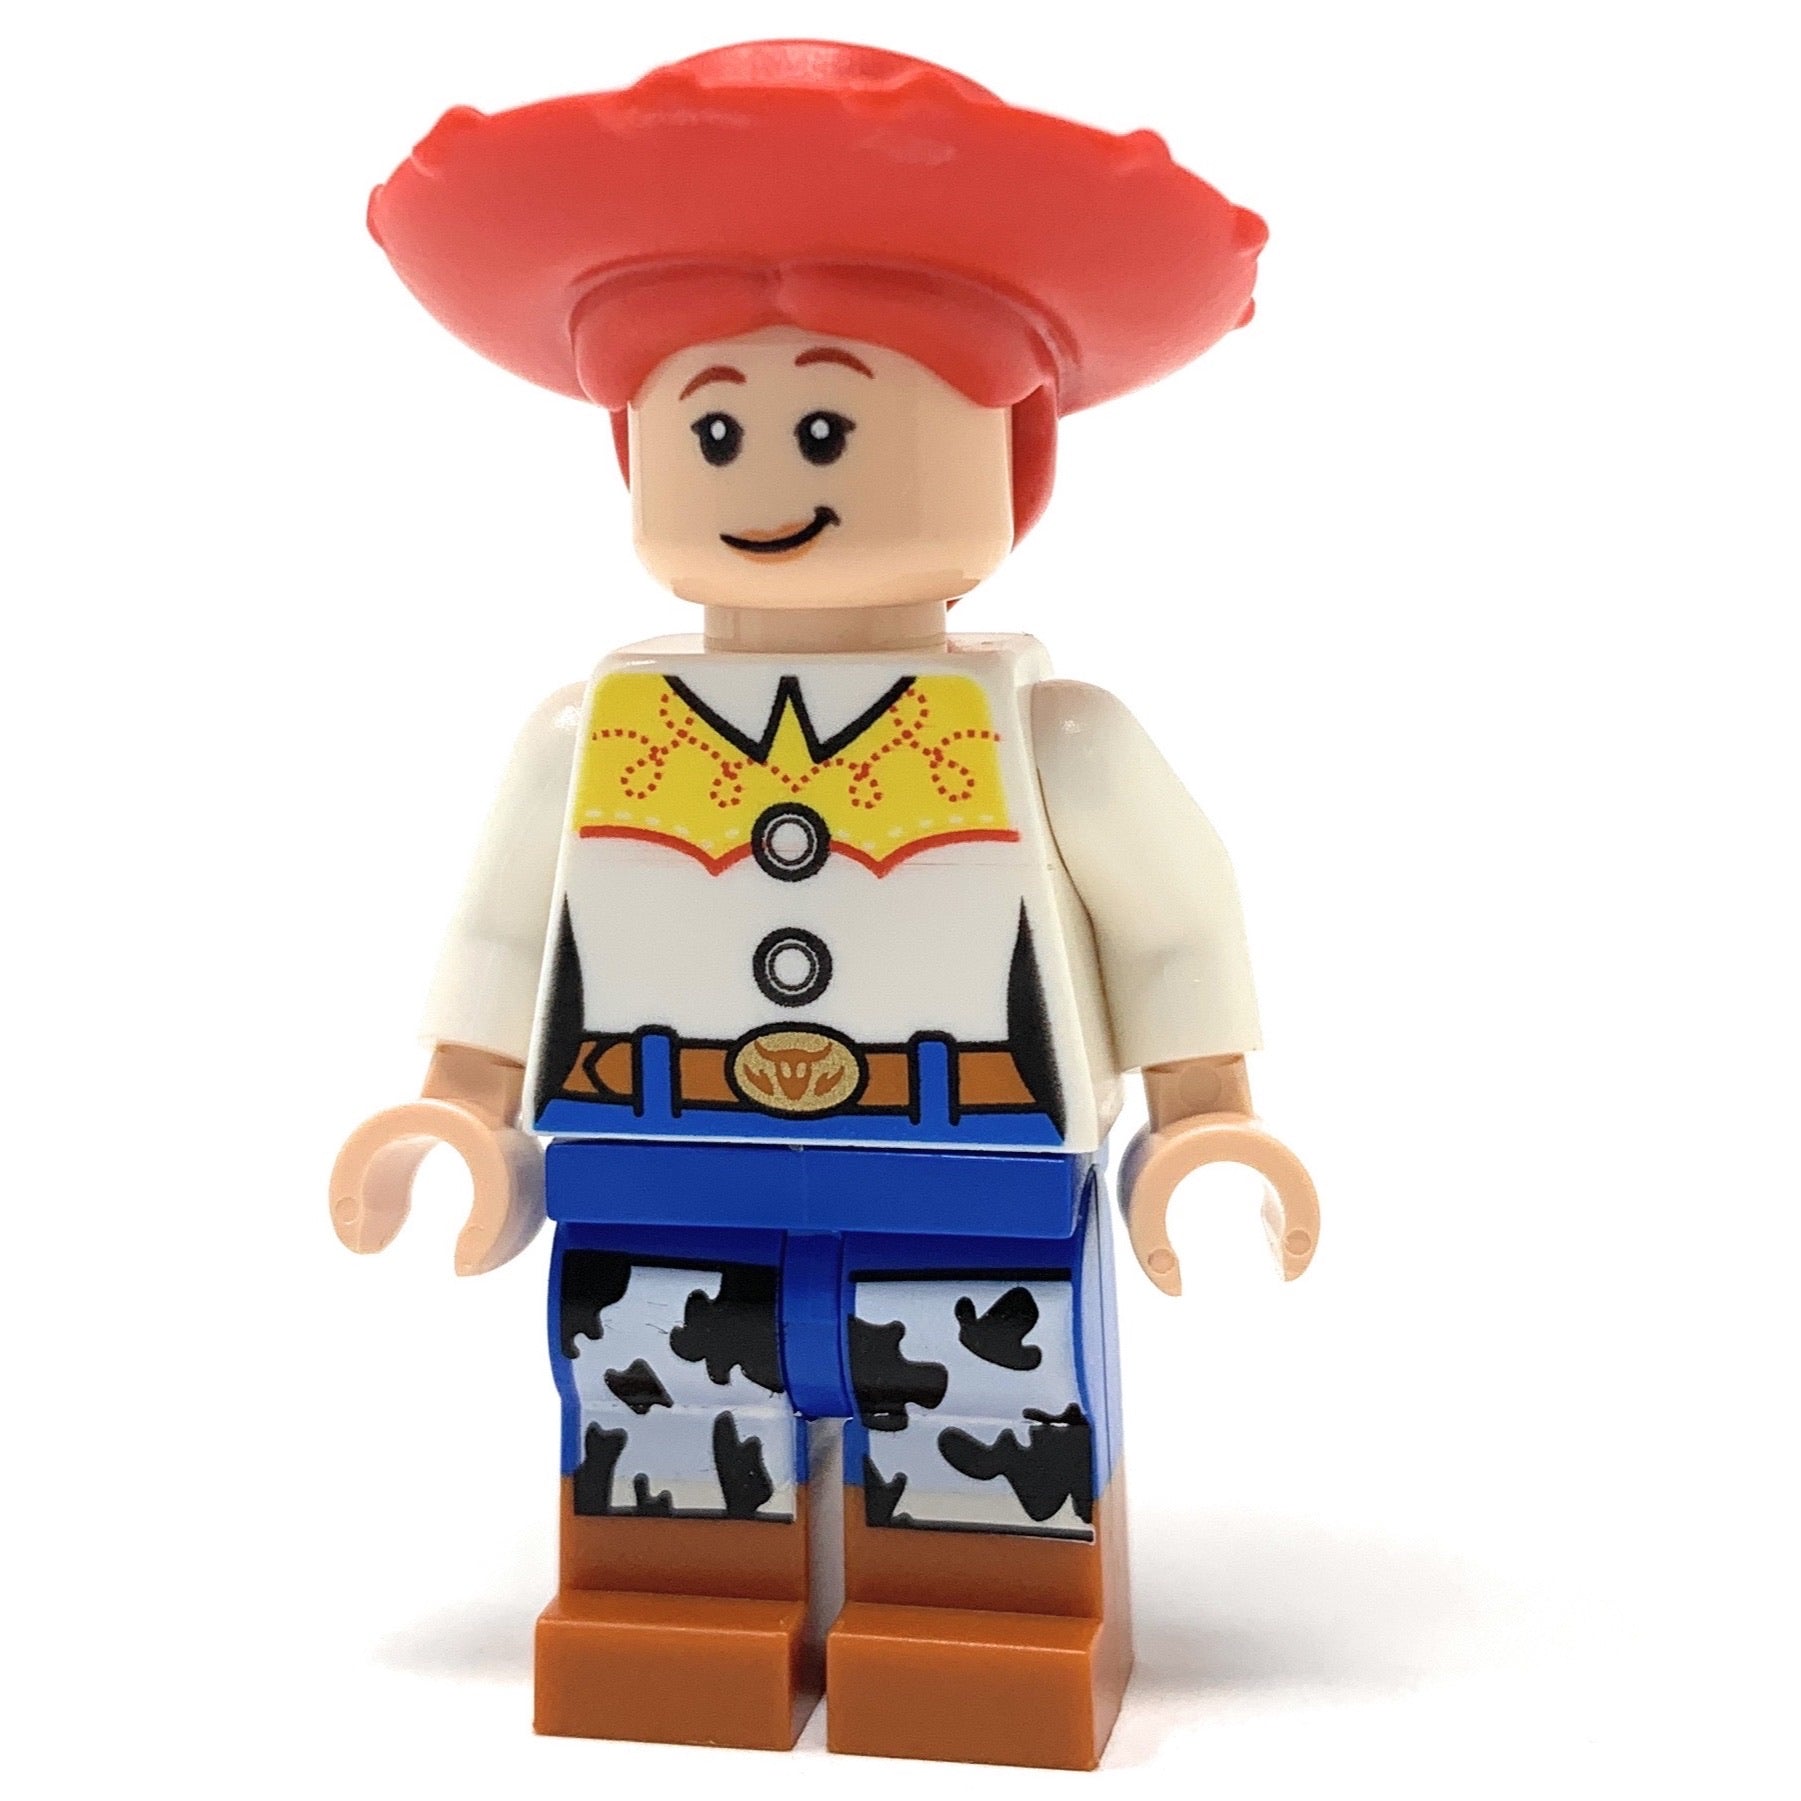 Jessie (Toy Story 4) - LEGO Disney Pixar Minifigure (2019)